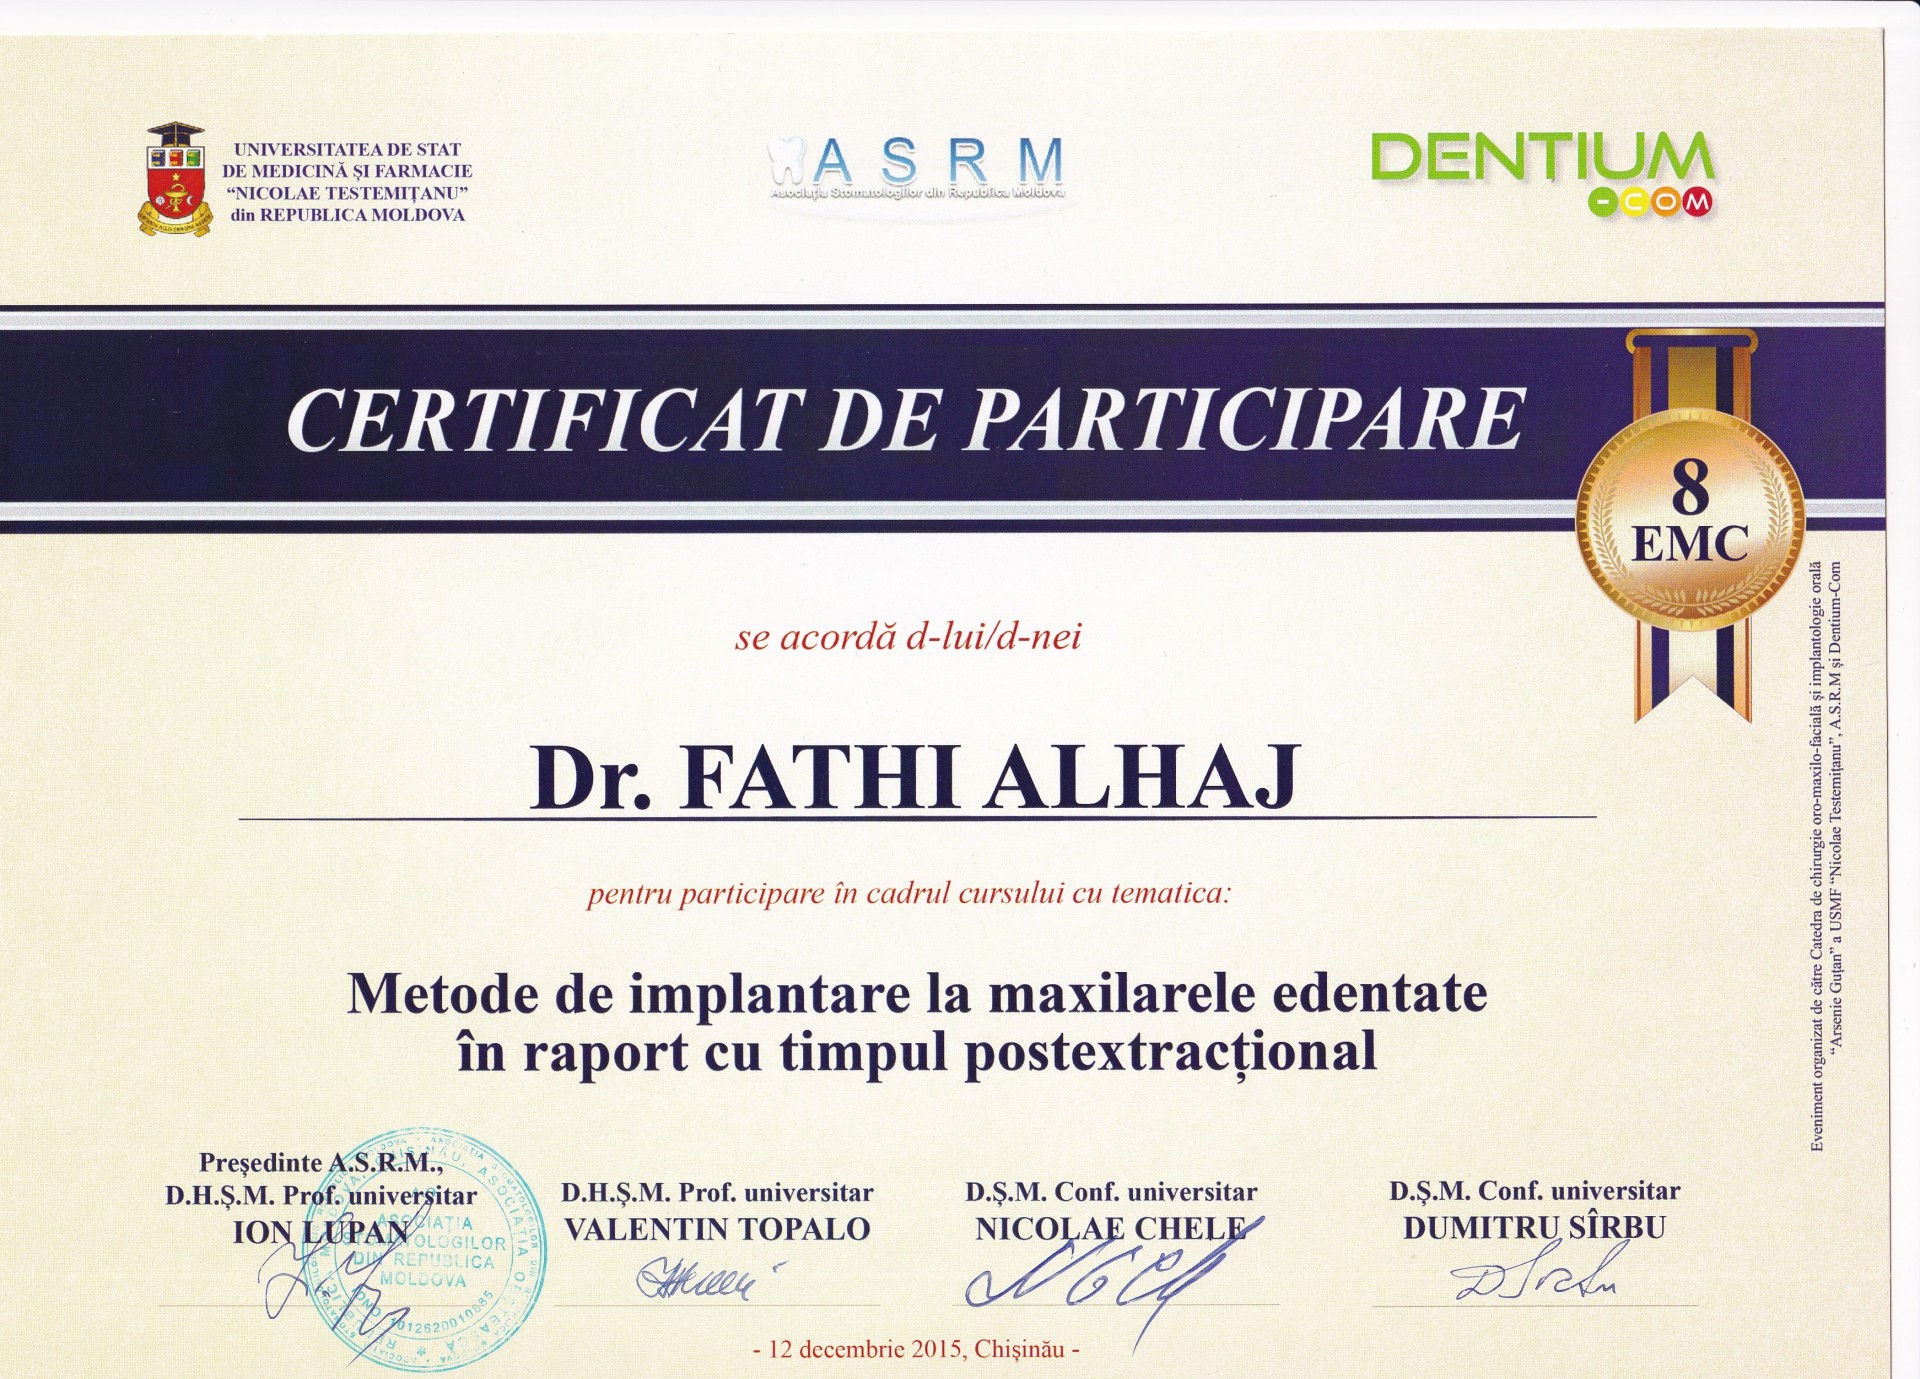 Al-Haj Fathi dentistoro-maxillo-facial surgeon